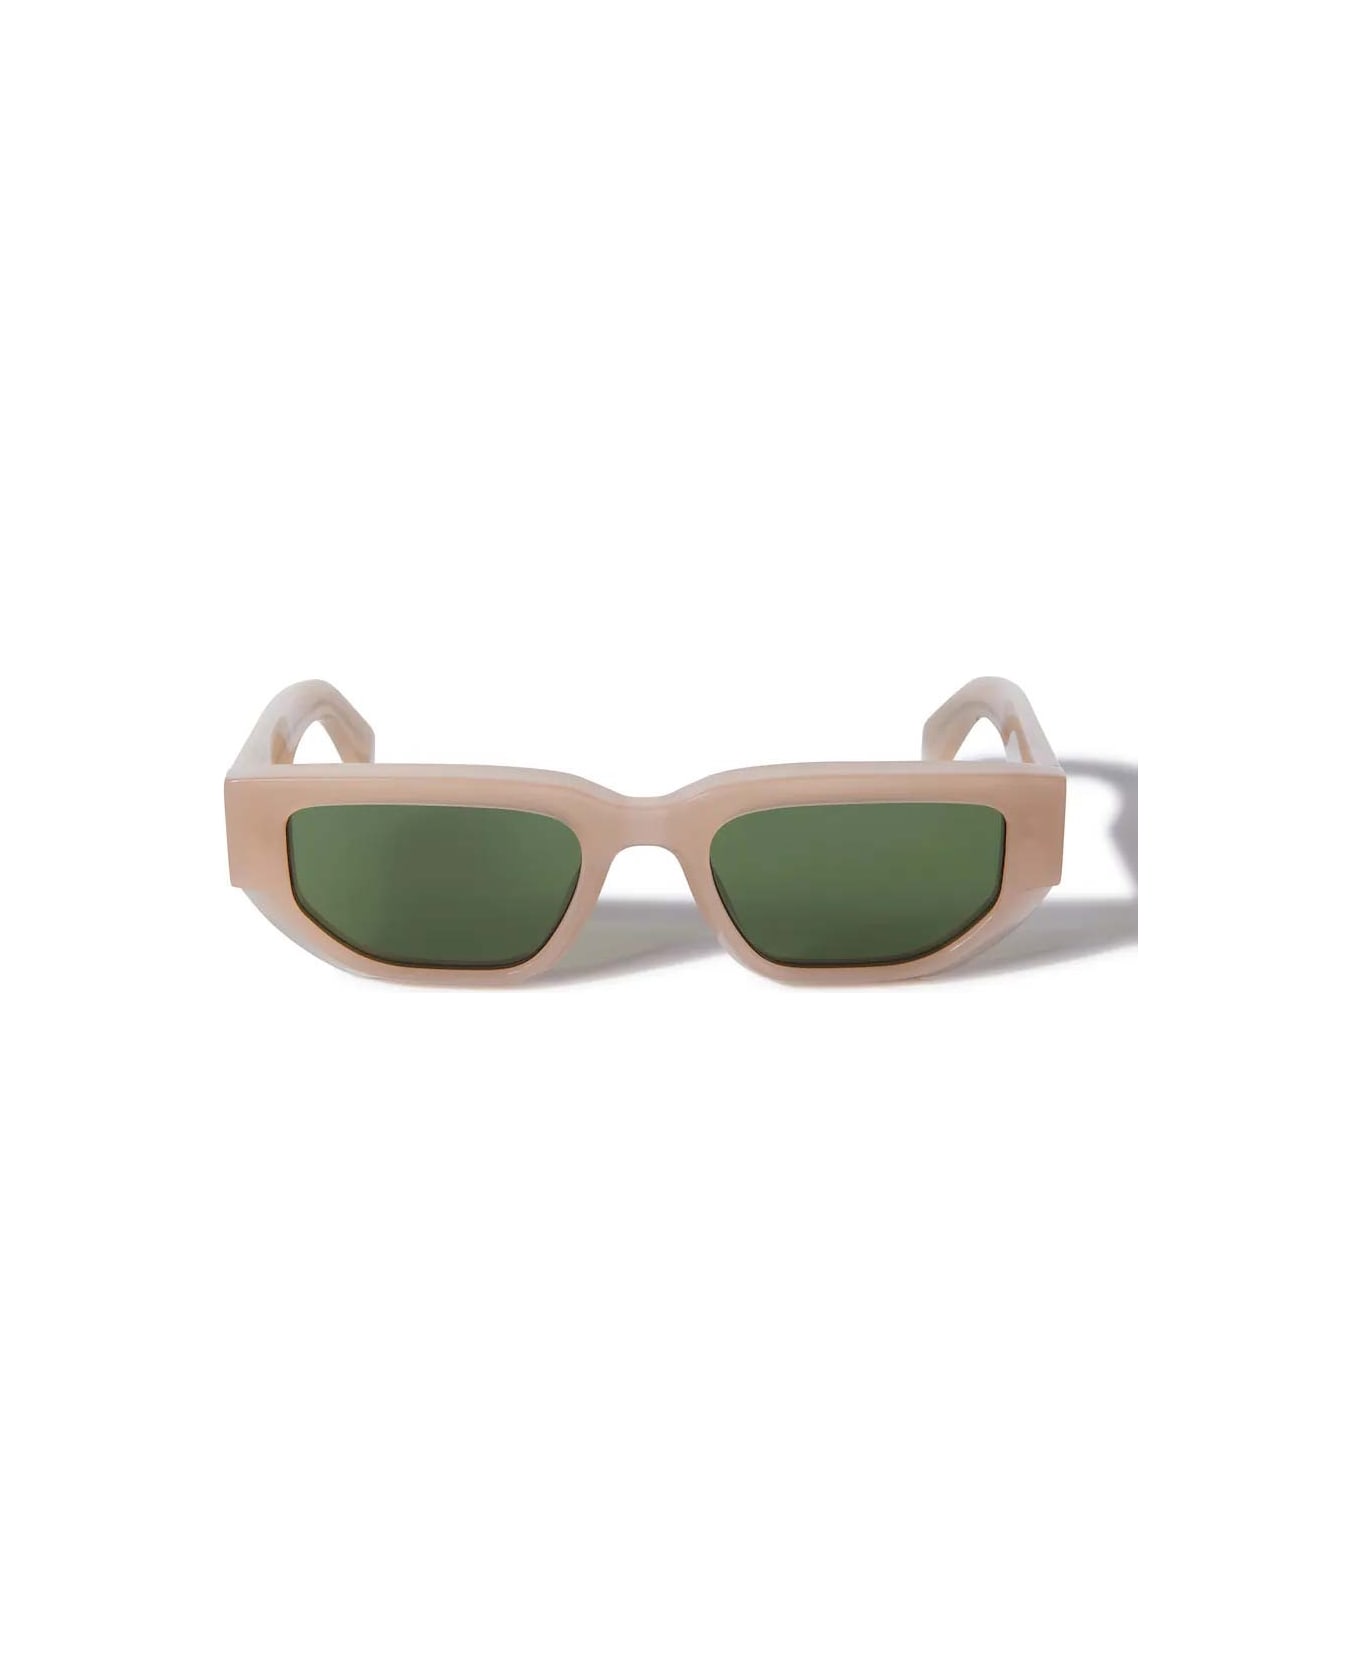 Off-White Sunglasses - Cipria/Verde